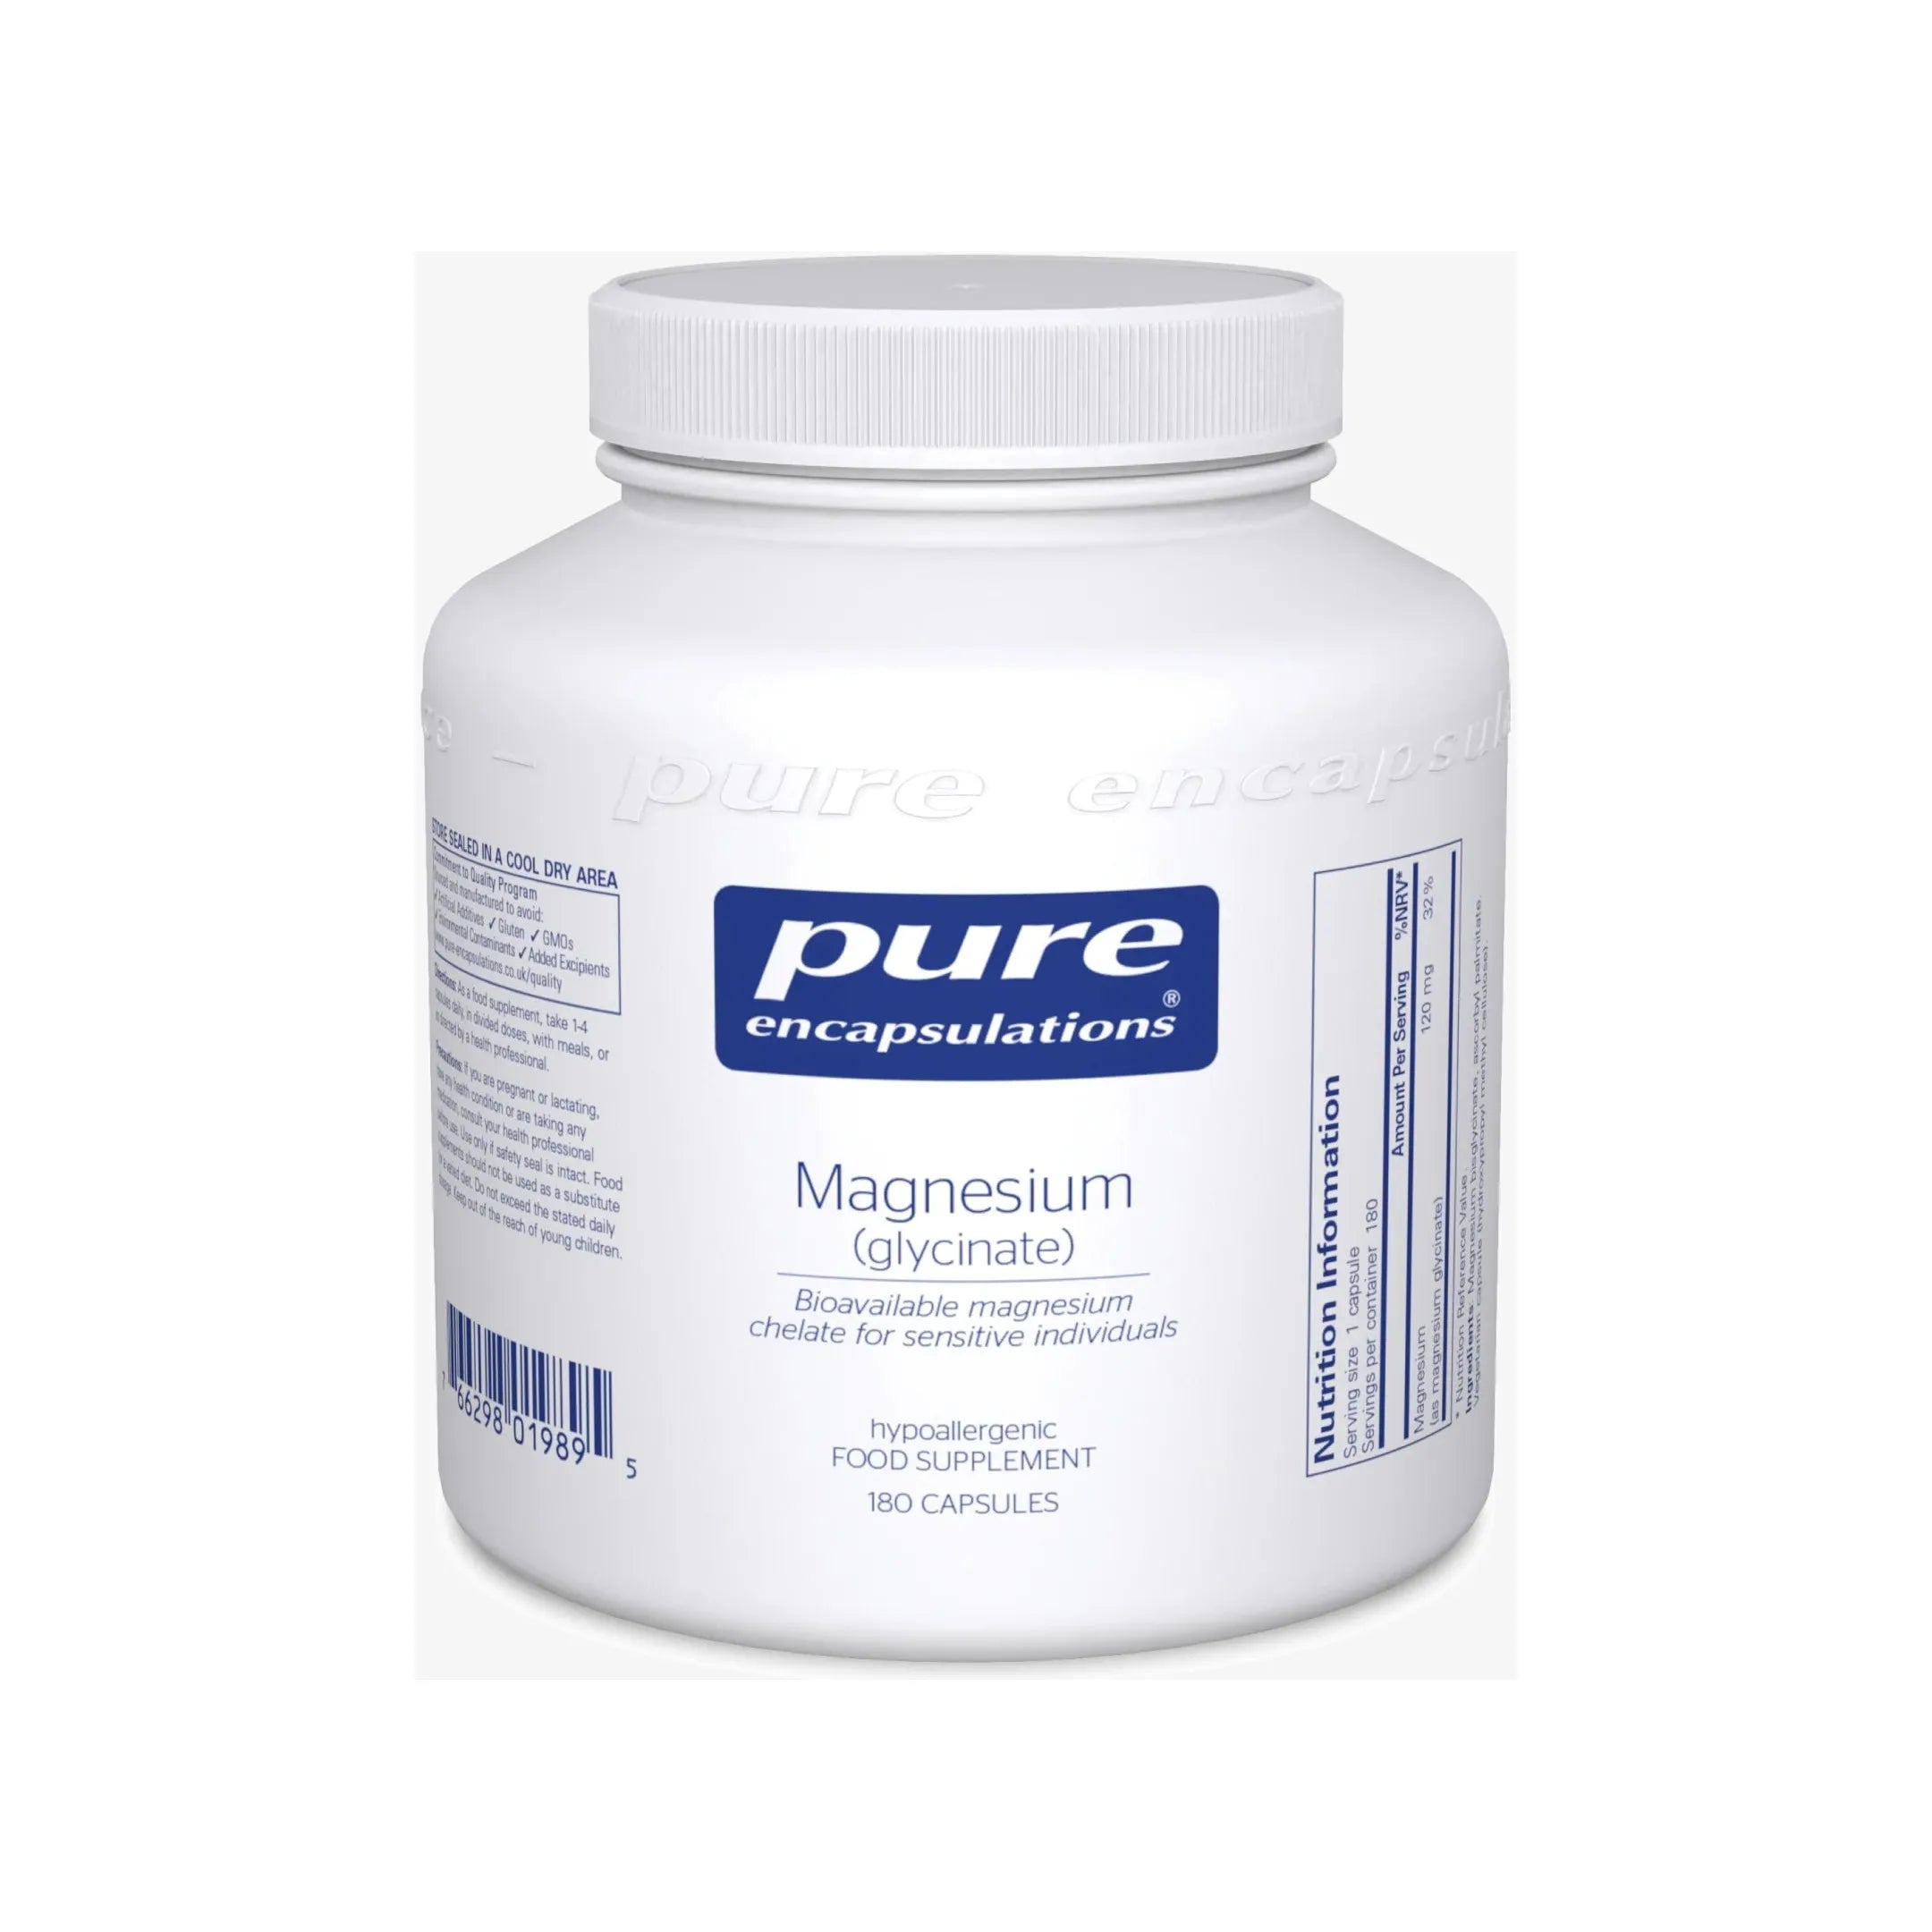 Pure Encapsulations Magnesium (glycinate) - 180 Capsules